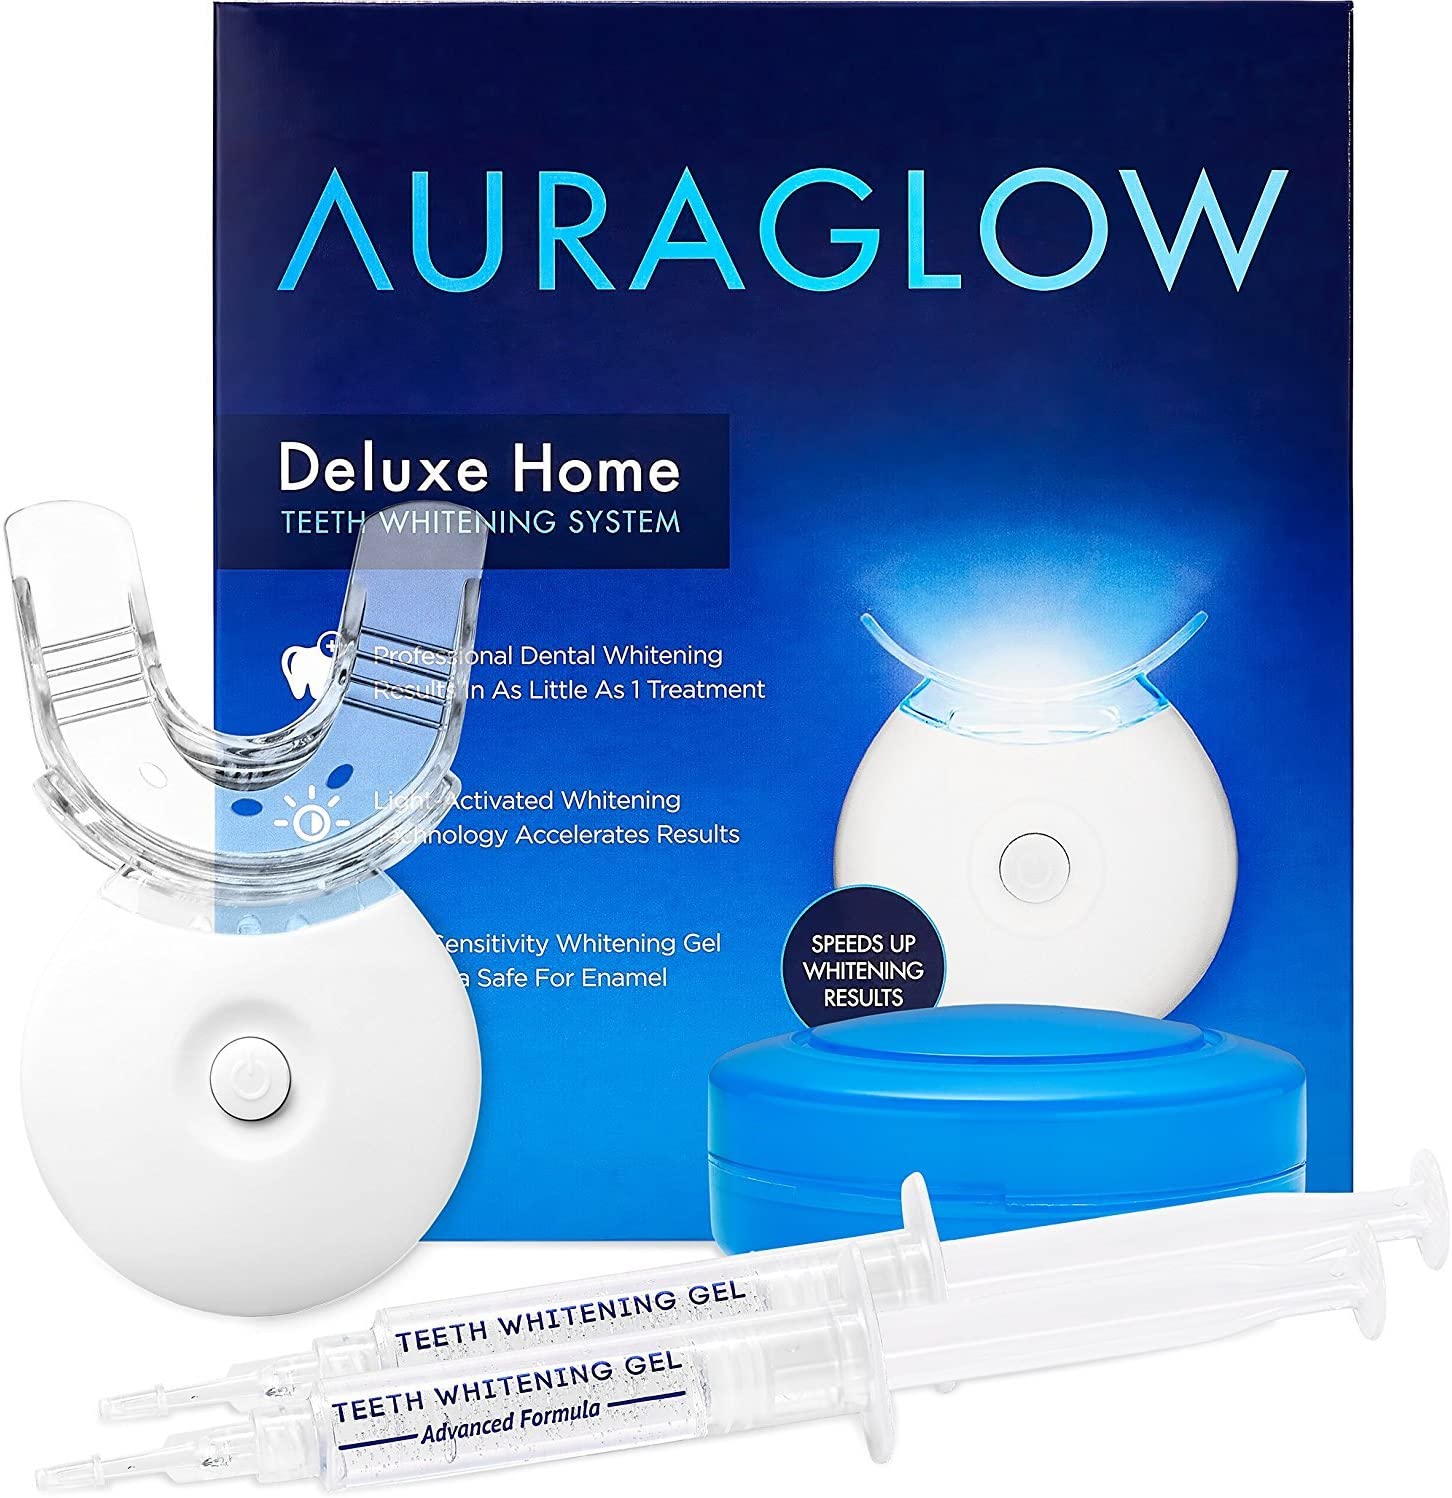 5. AuraGlow Teeth Whitening Kit